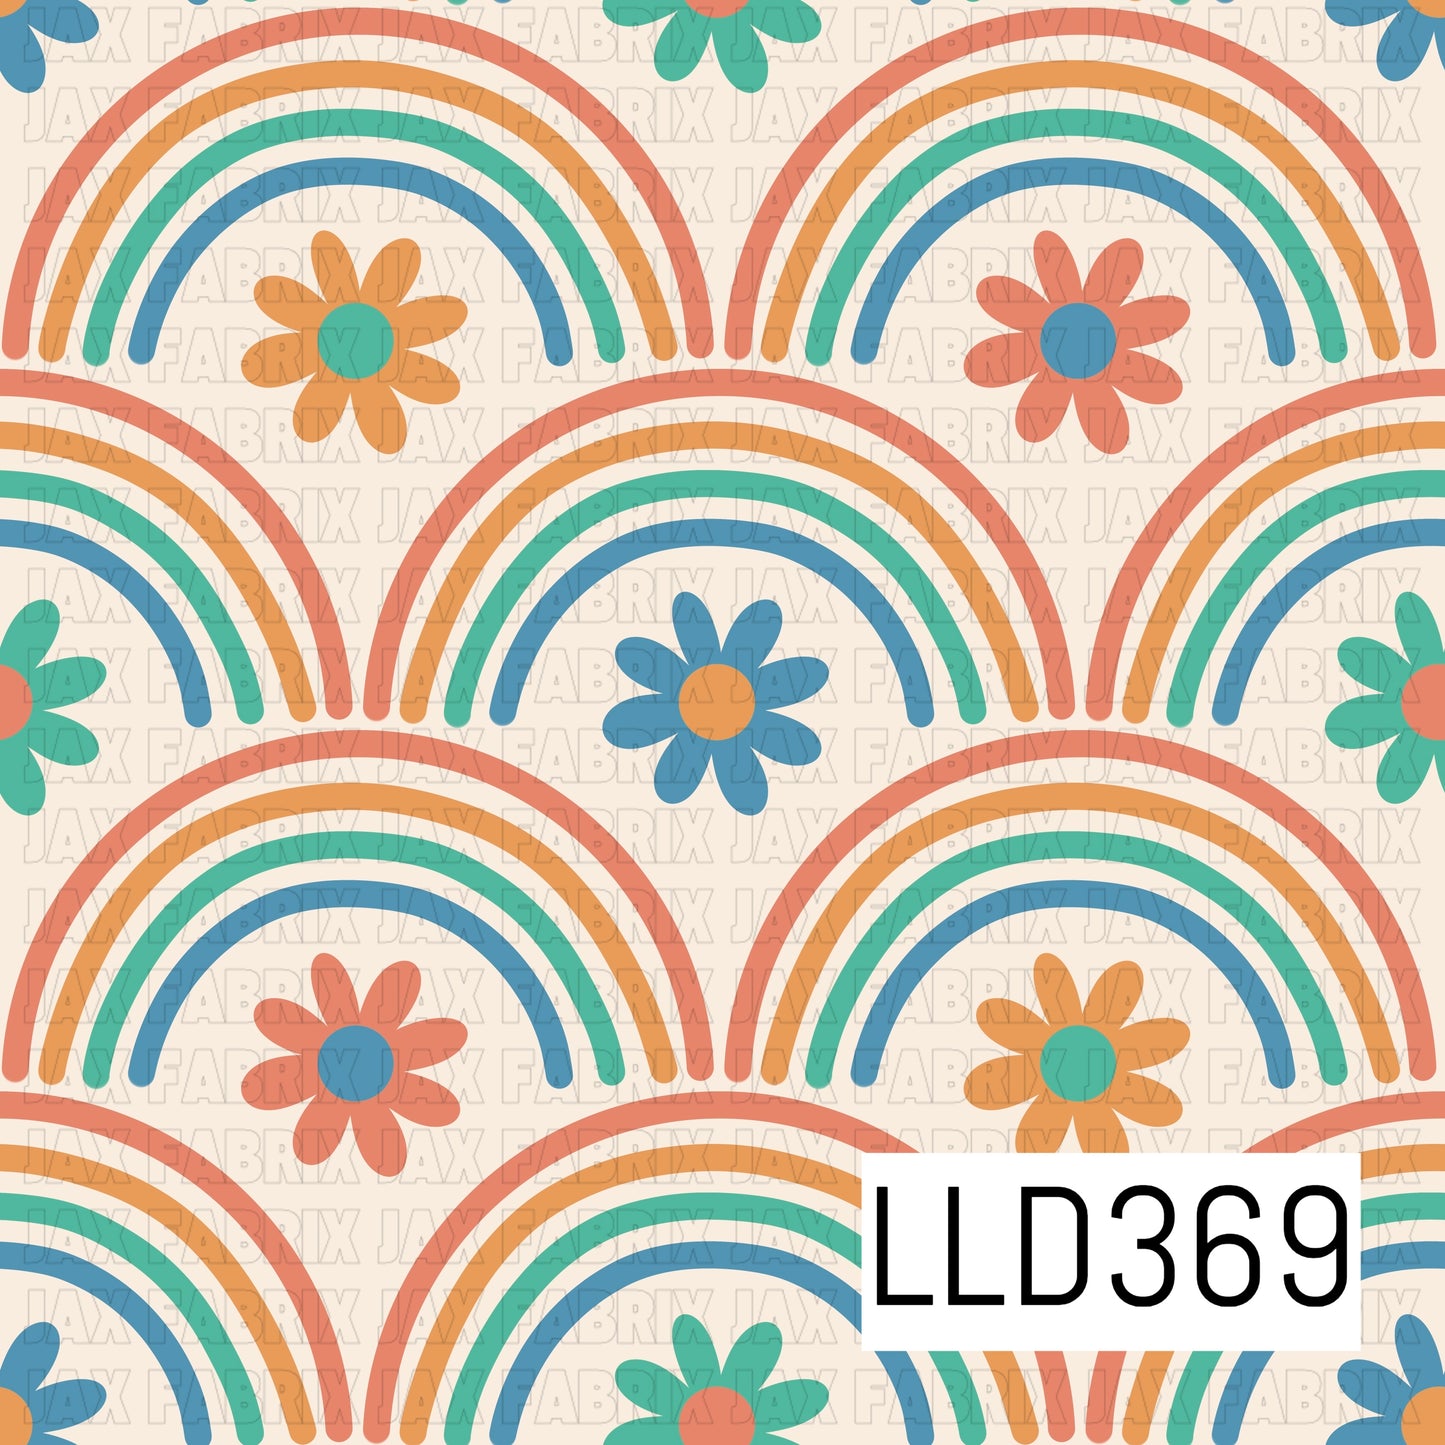 LLD369